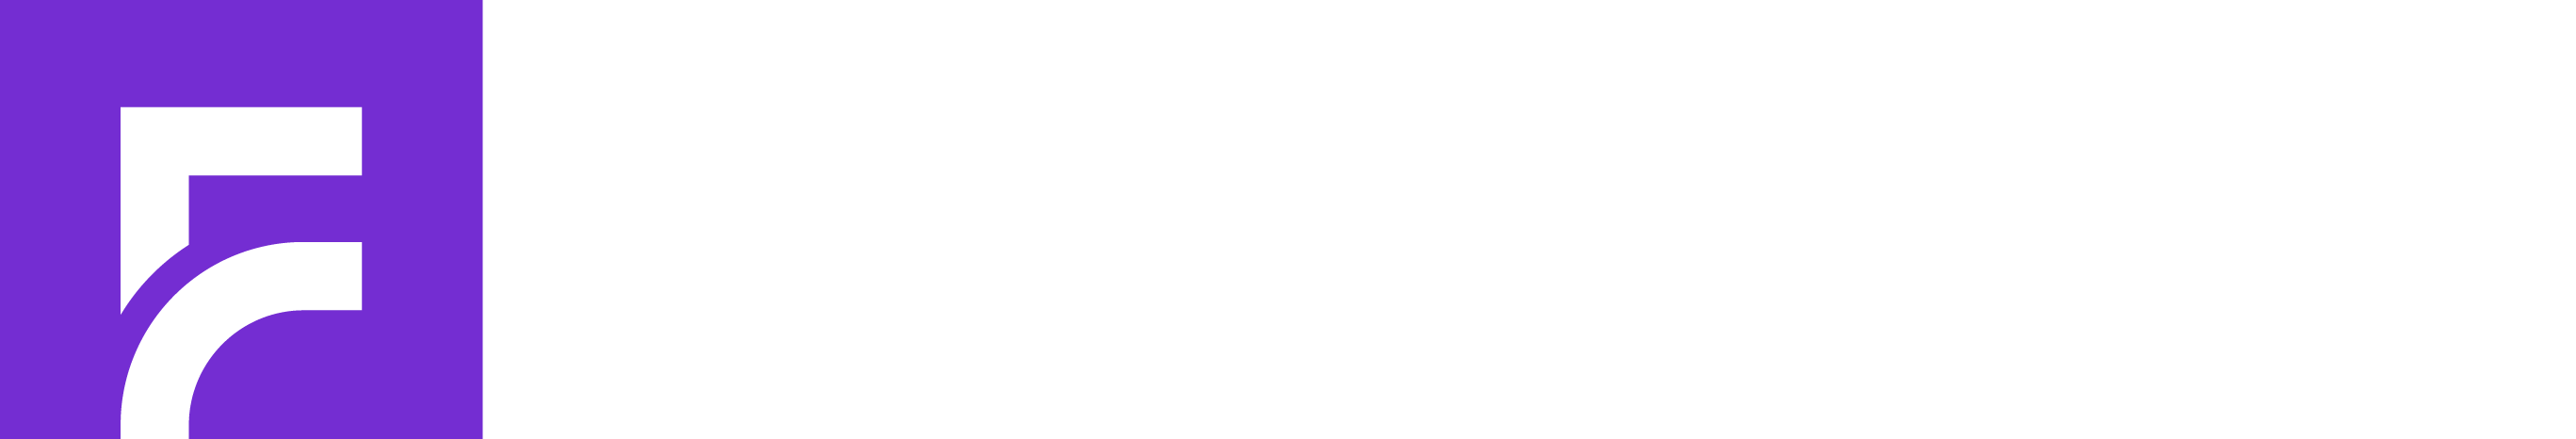 Focus Education_Logo ngang_Tím+Trắng